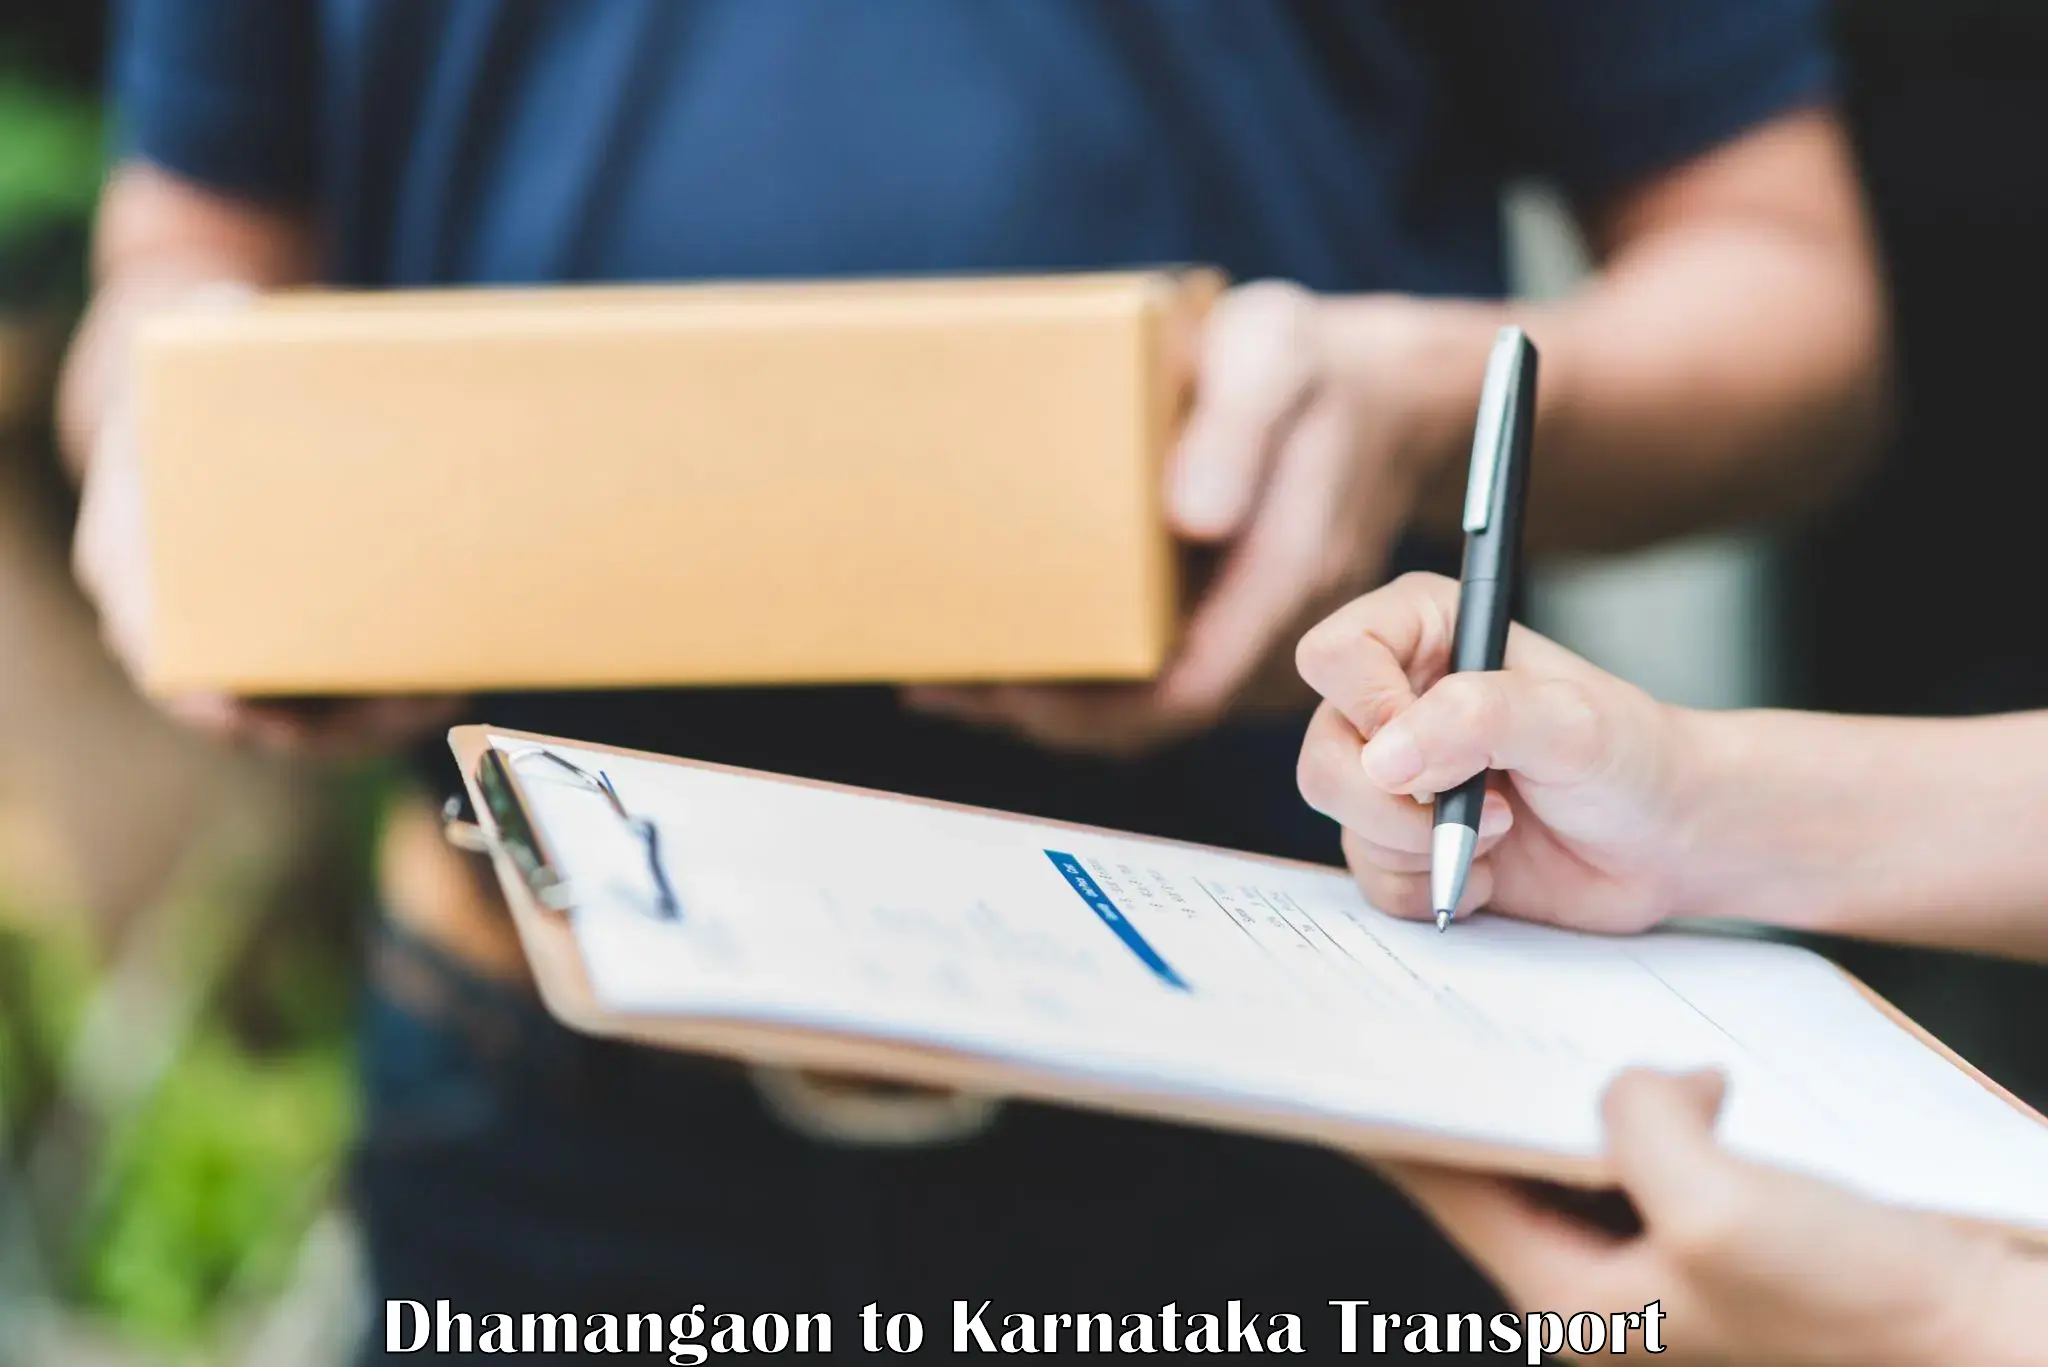 Online transport booking Dhamangaon to Karnataka